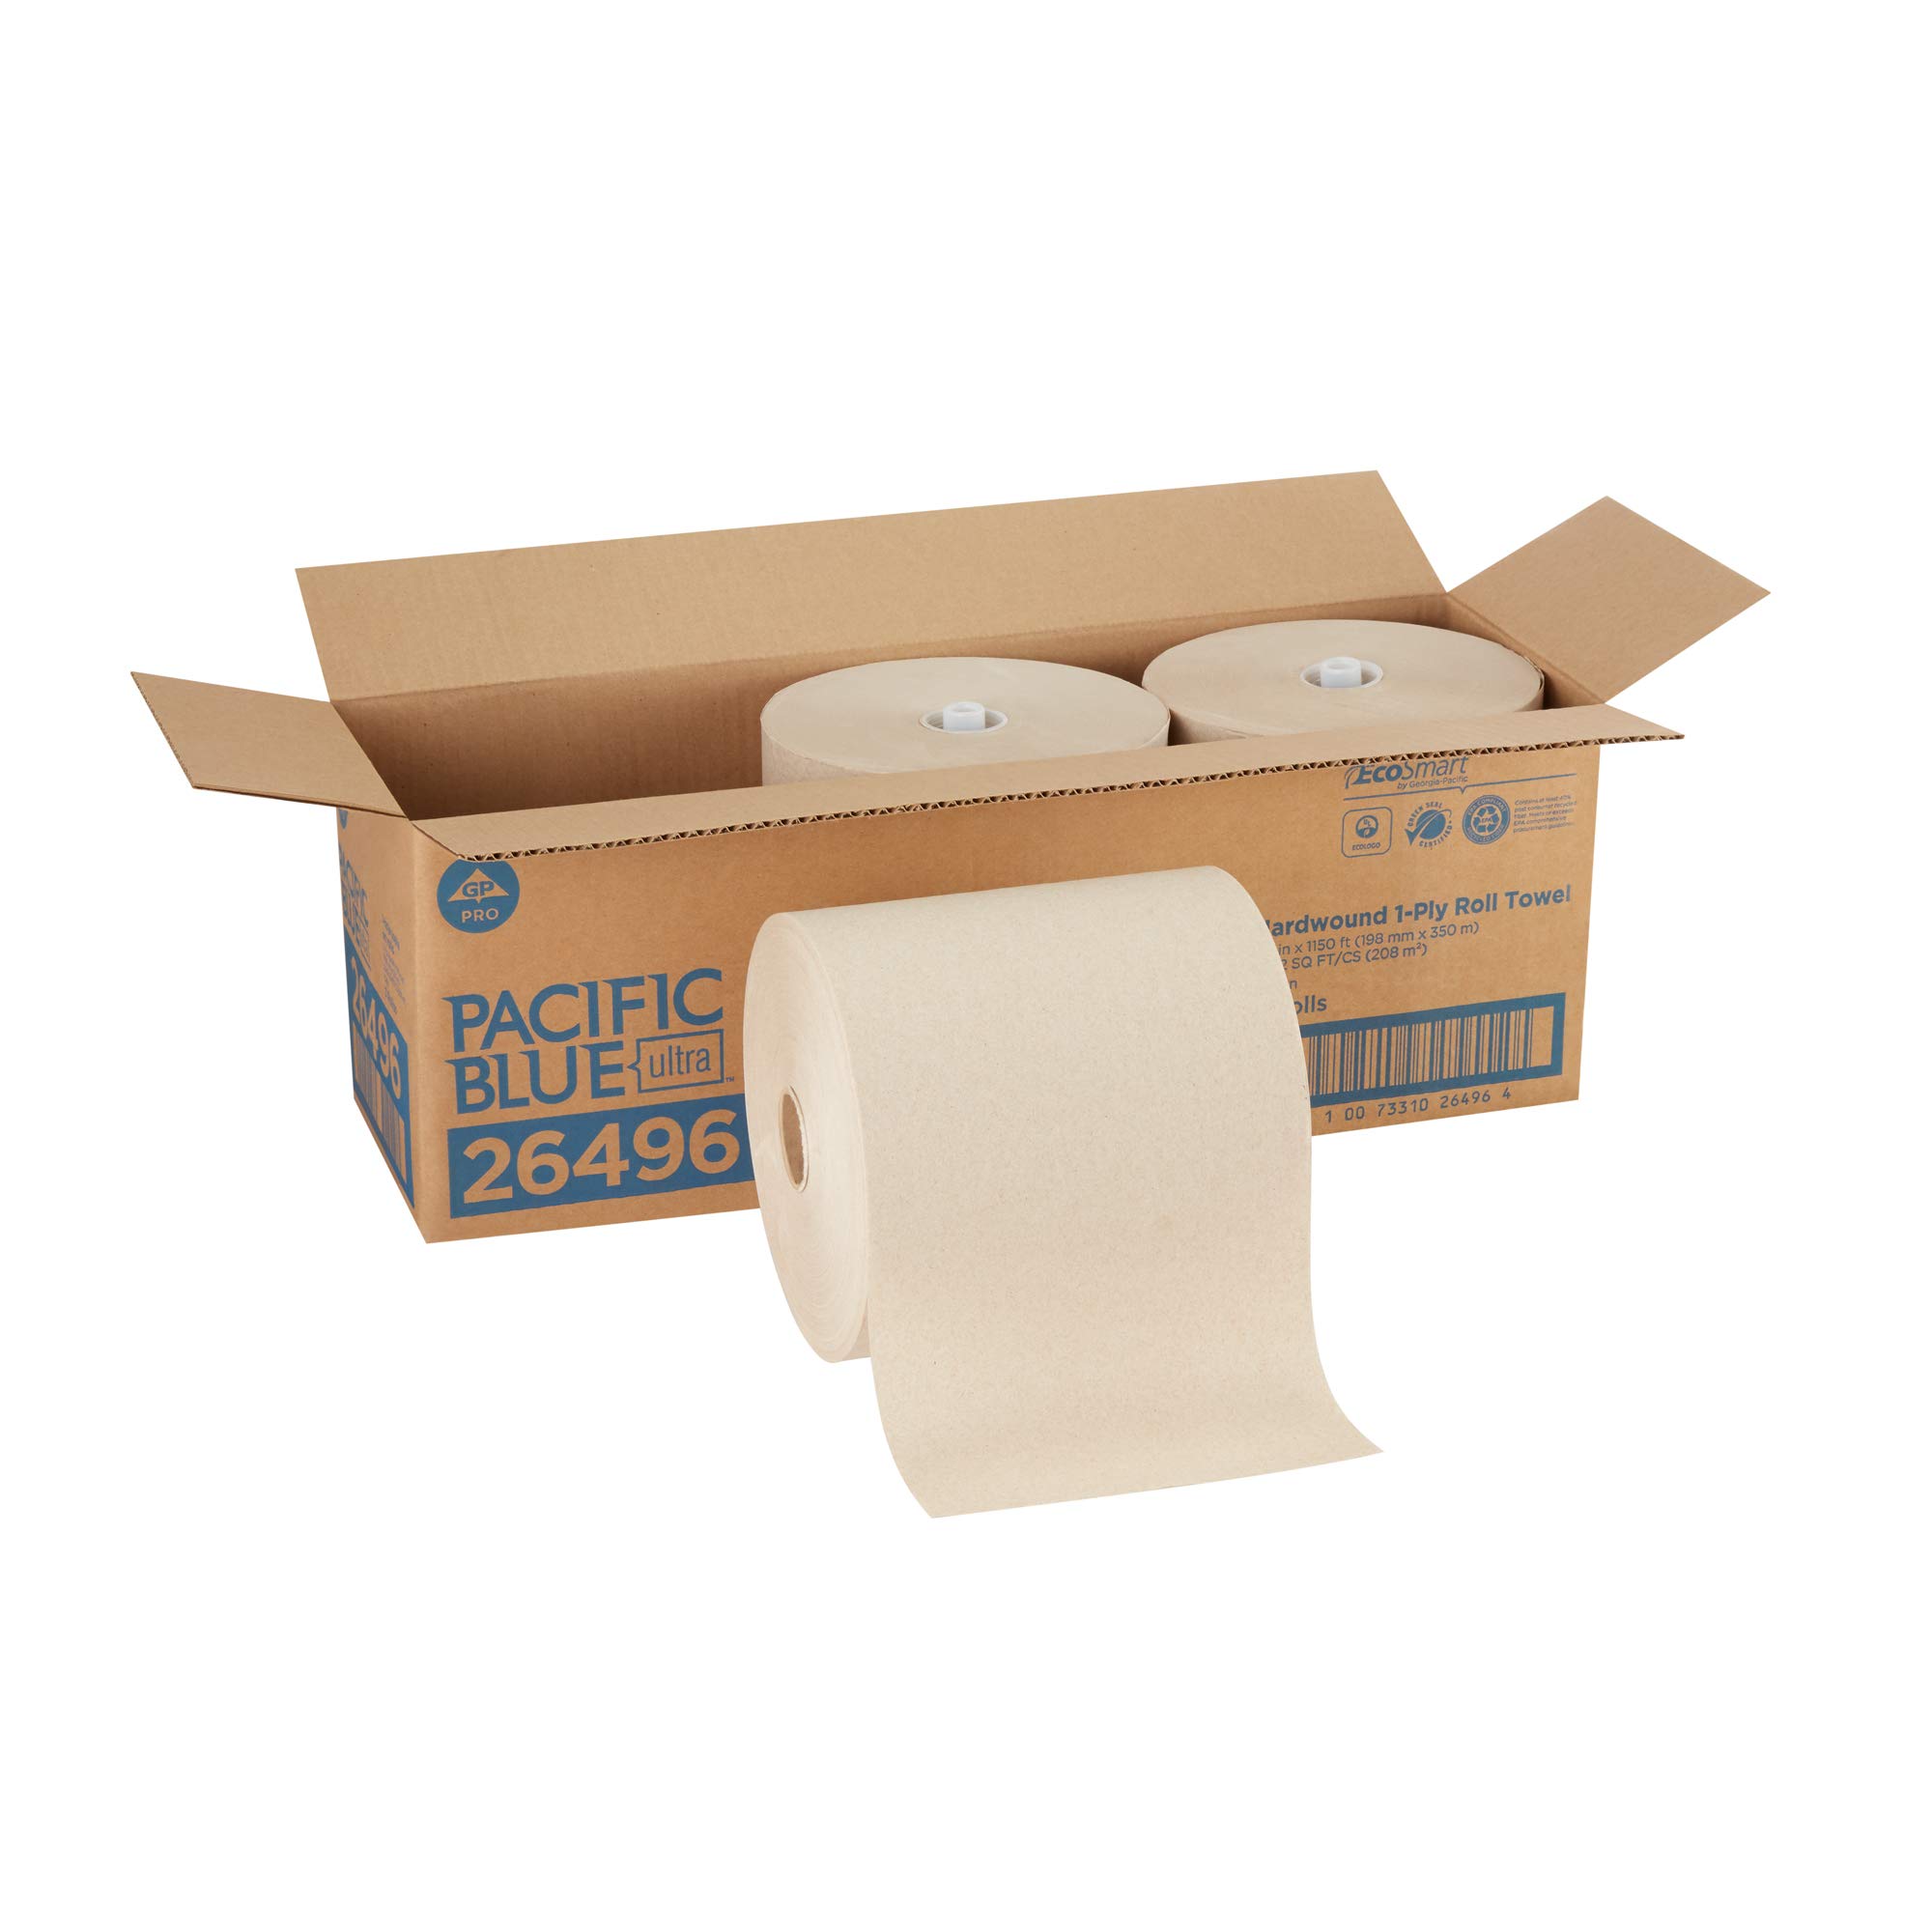 Georgia-Pacific Rouleau d'essuie-mains en papier recyclé ultra haute capacité Pacific Blue par GP PRO ()